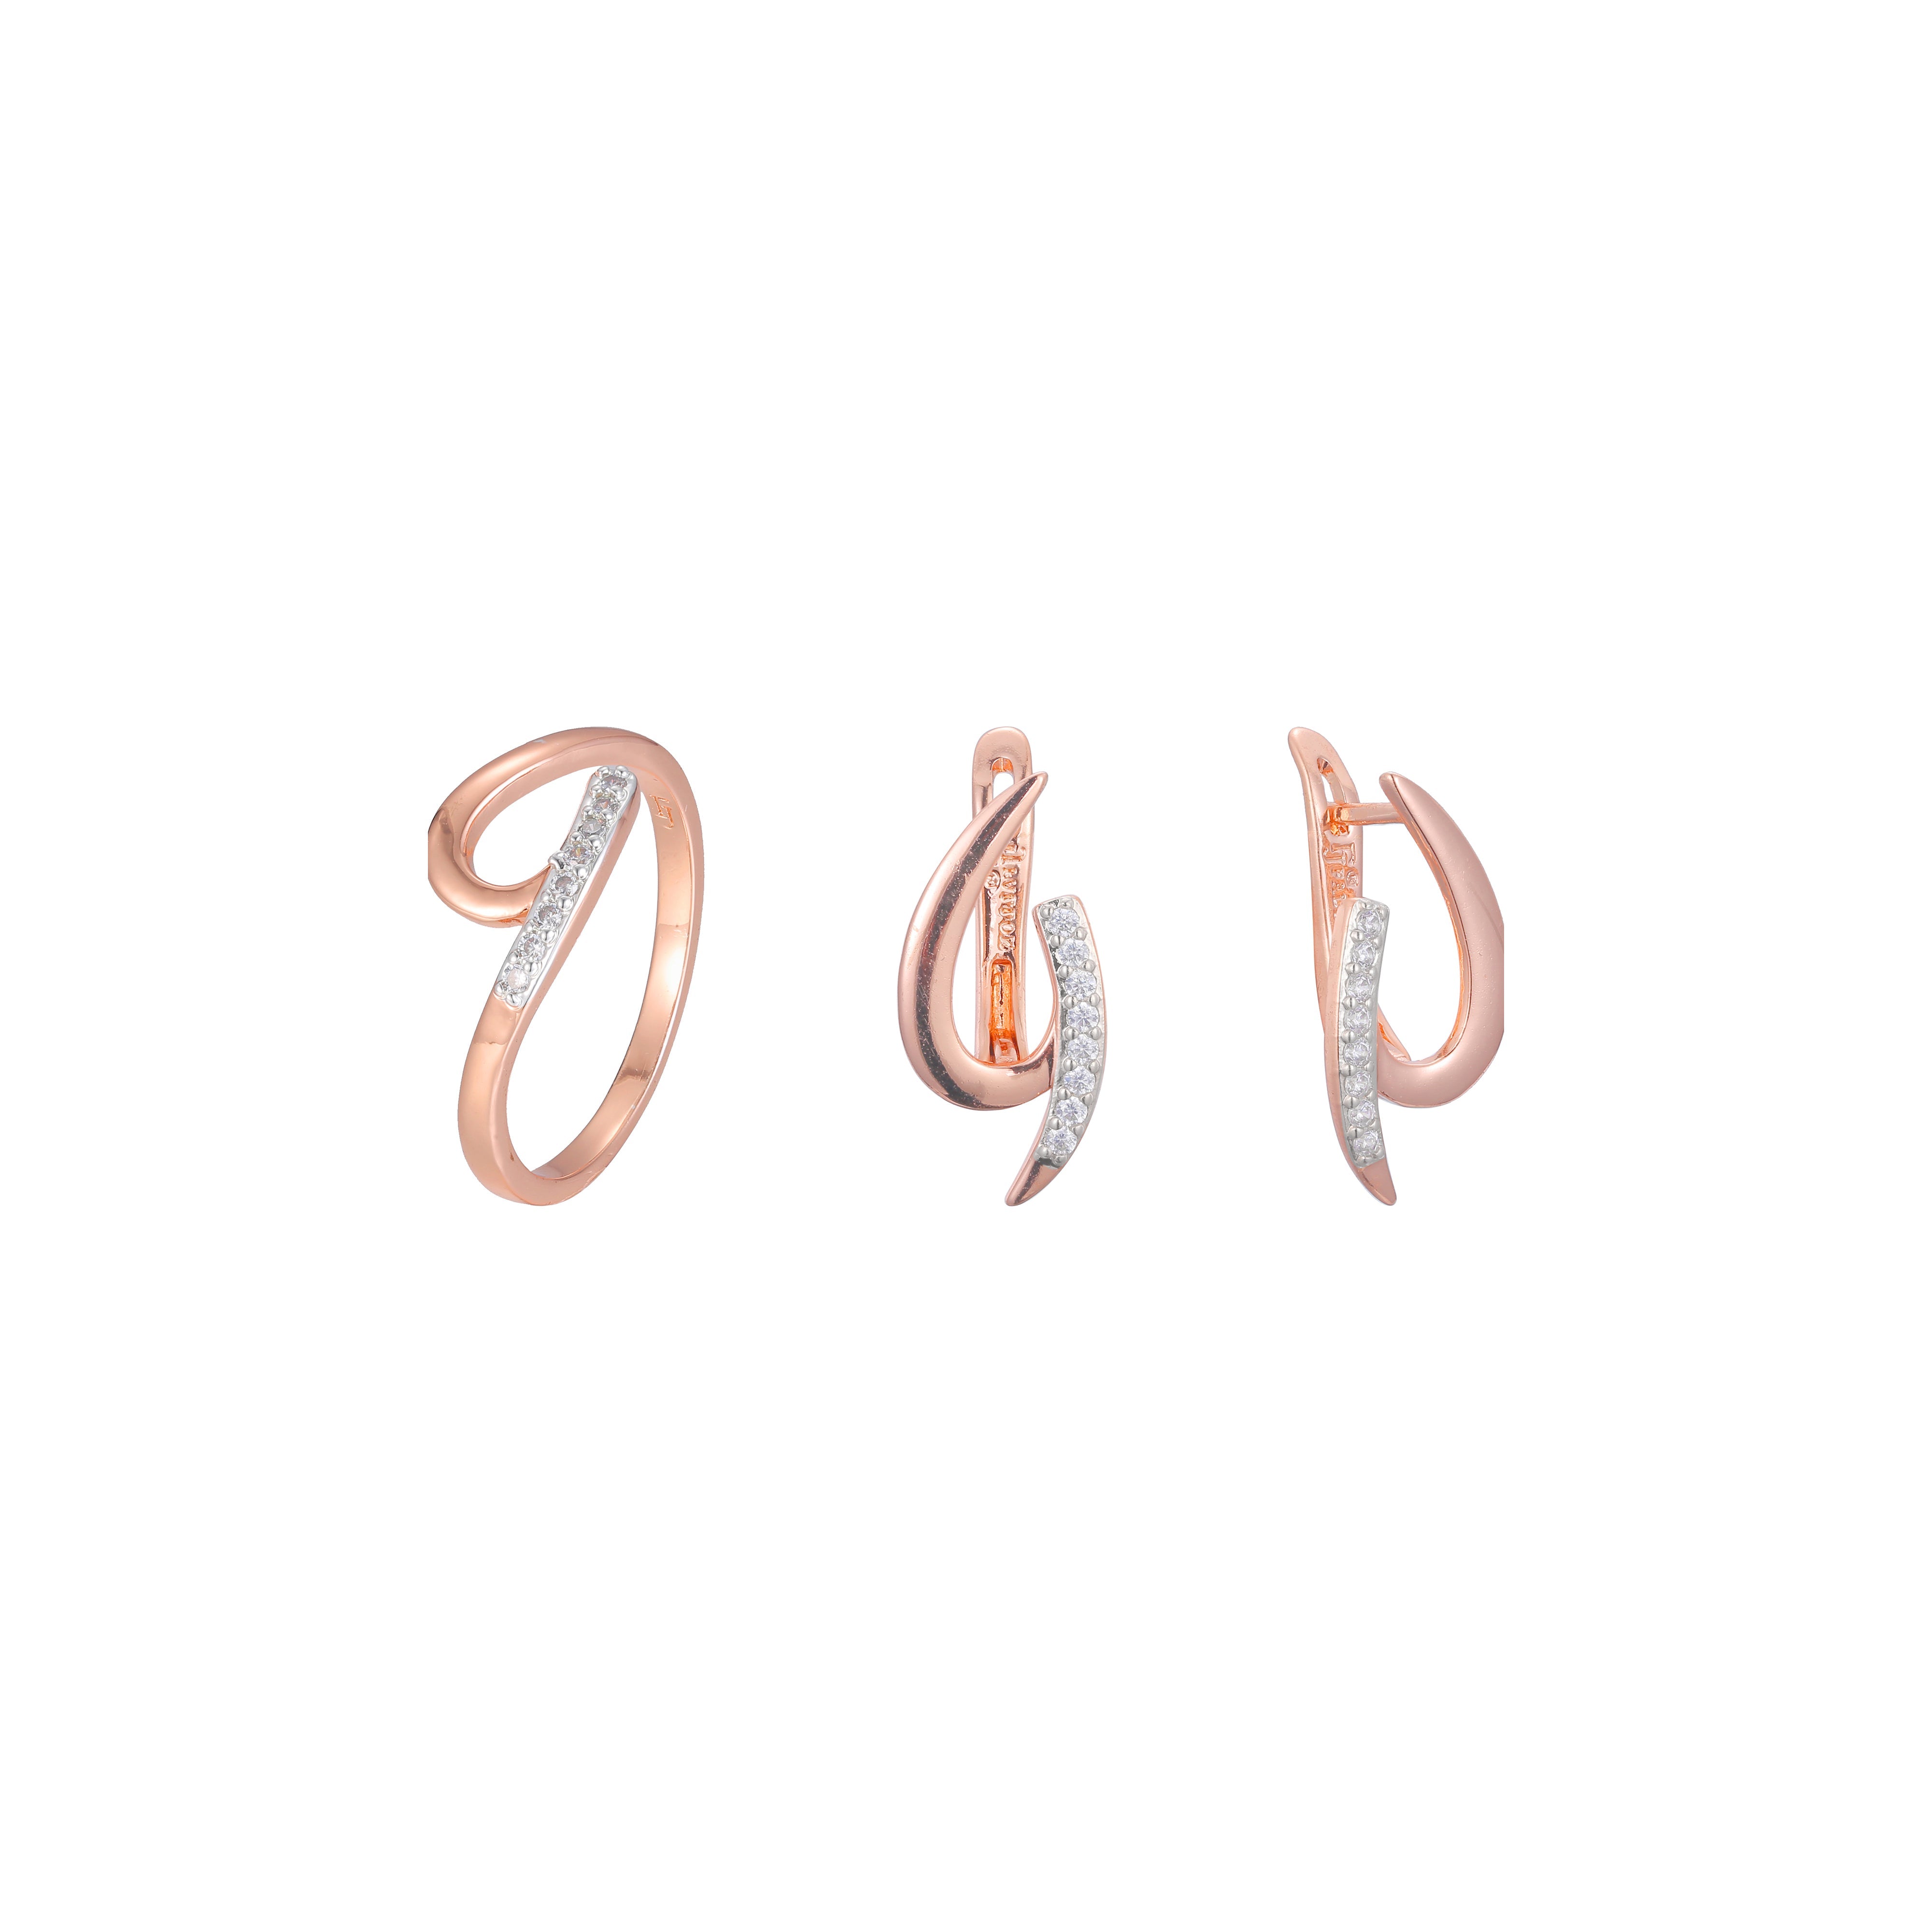 Conjunto de joyería minimalista redondo y puntiagudo chapado en oro rosa